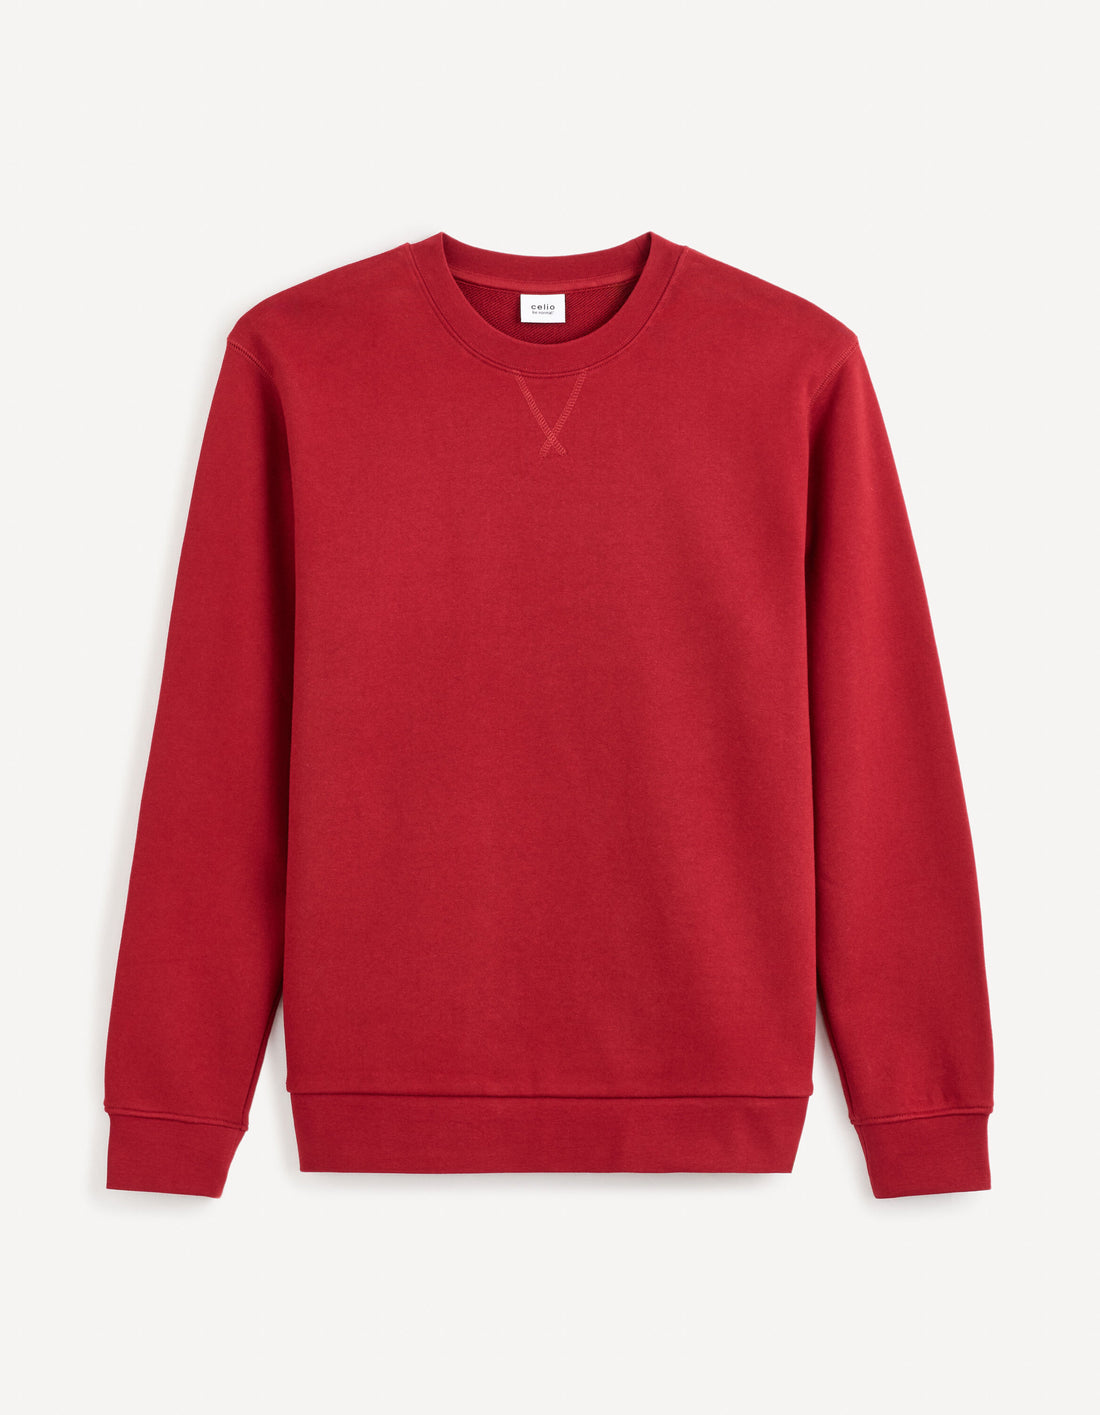 Round Neck Sweatshirt 100% Cotton_FESEVEN_BURGUNDY_01